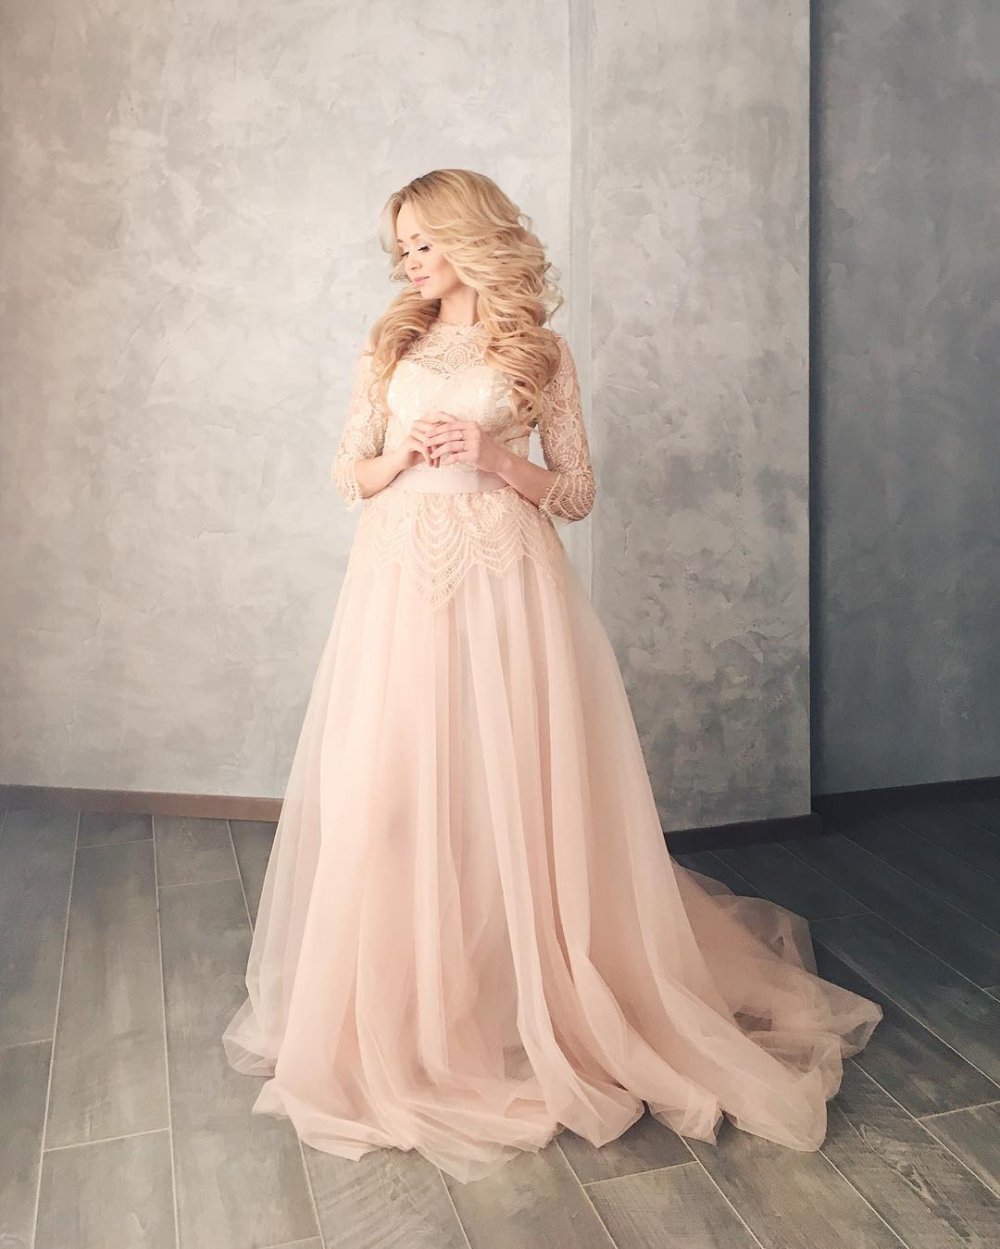 Воздушное платье Vesta цвета розовый кварц подчеркнёт хрупкость и нежность невесты